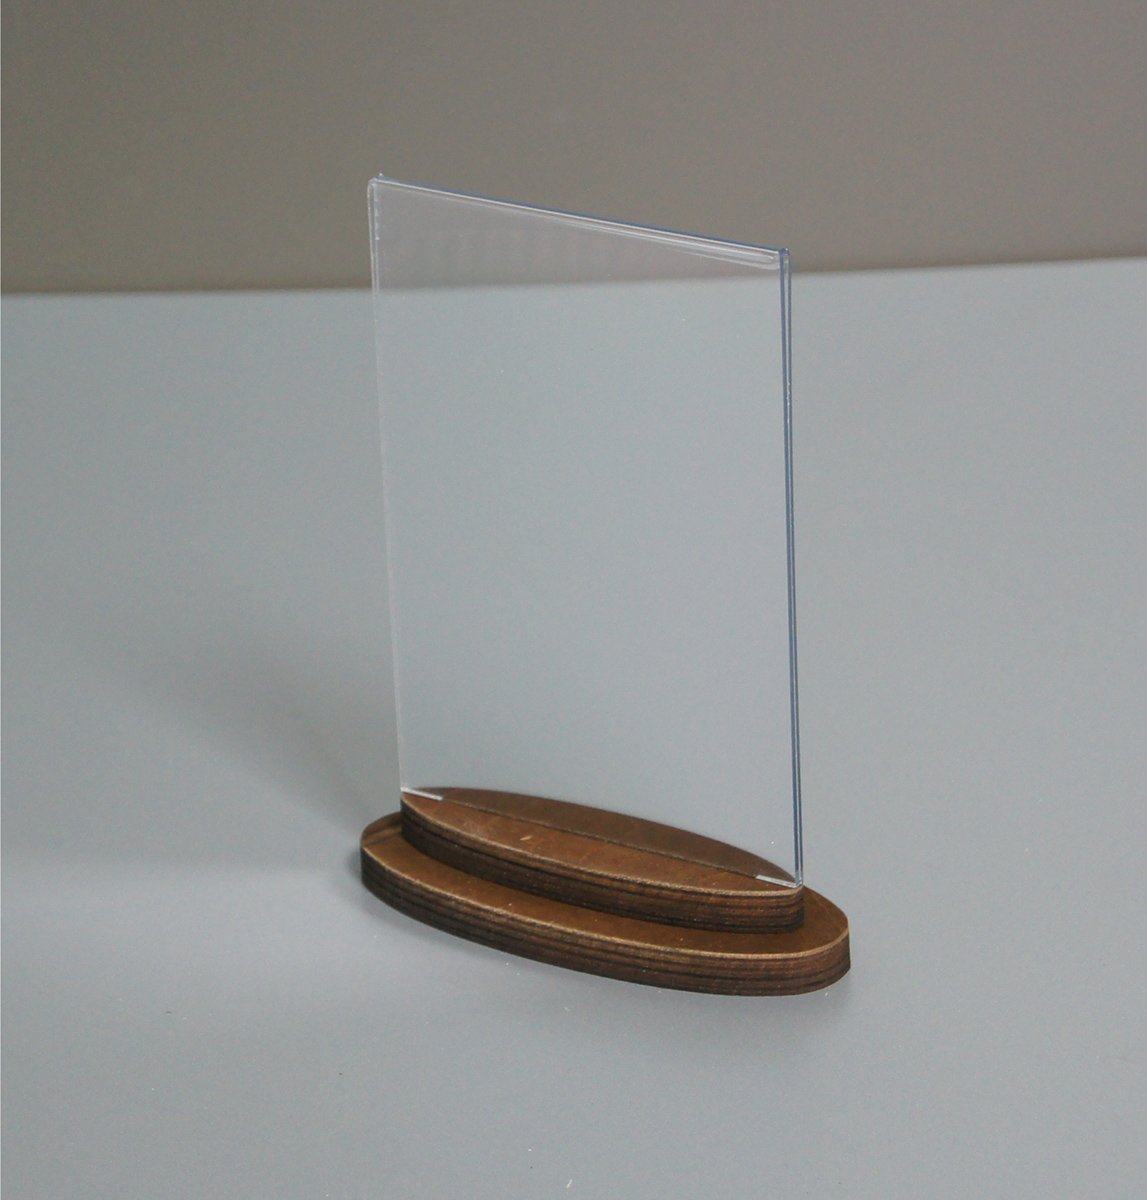 Тейбл тент с деревянным фигурным основанием для формата А6, арт. 14206/o